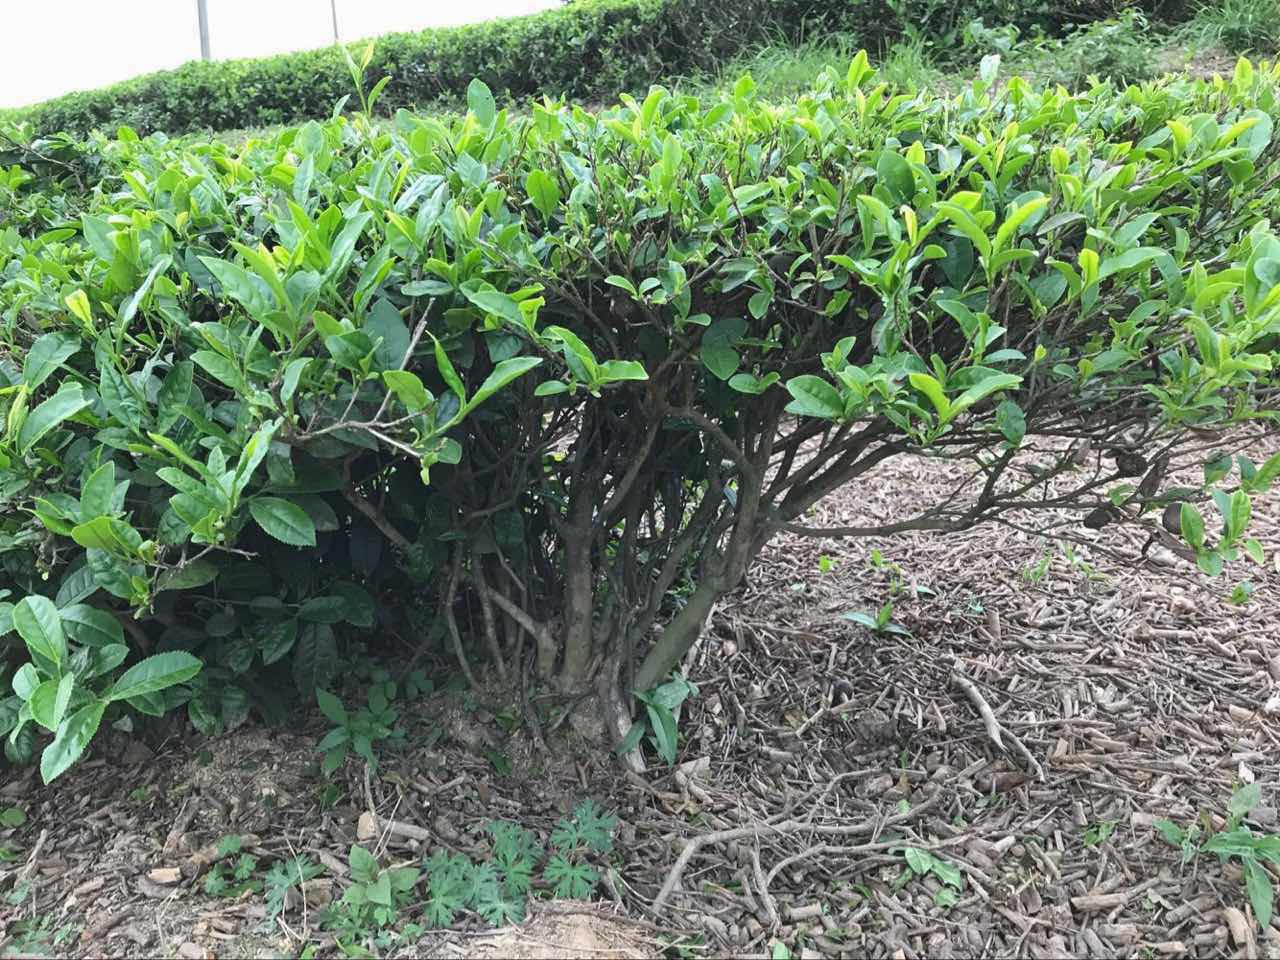 Tea bushes used to make Mao Jian (Misty New Top)